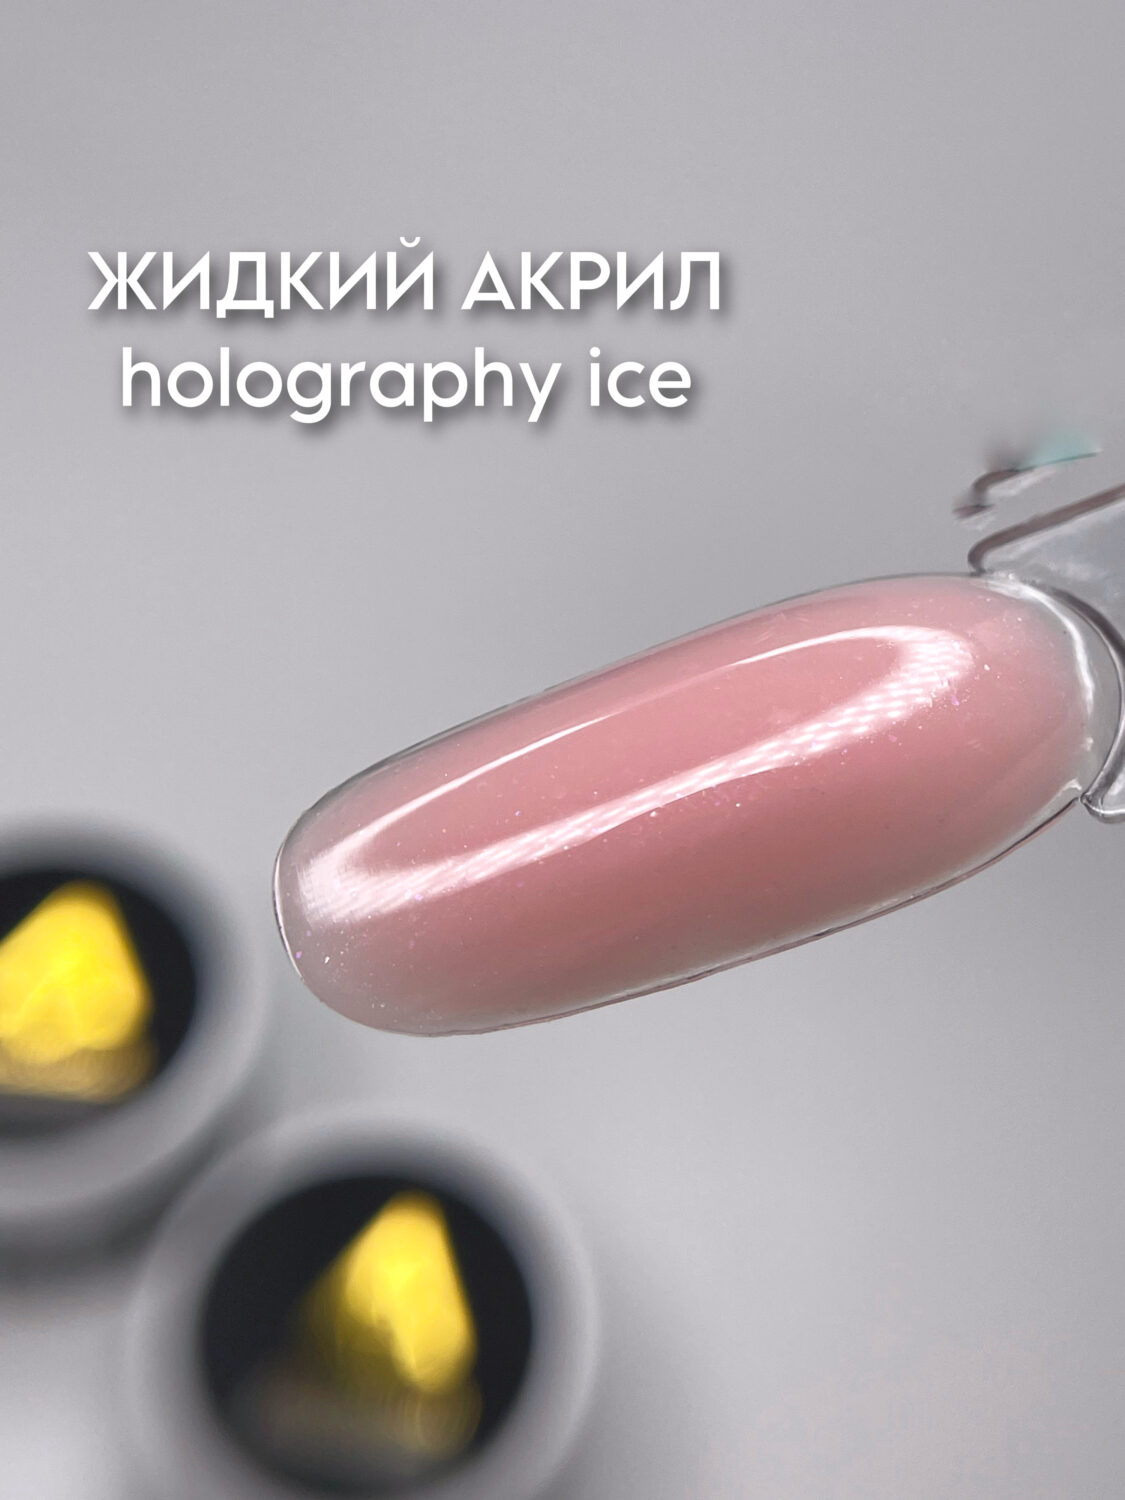 ArtDiamond Гель жидкий акрил 15гр holography ice